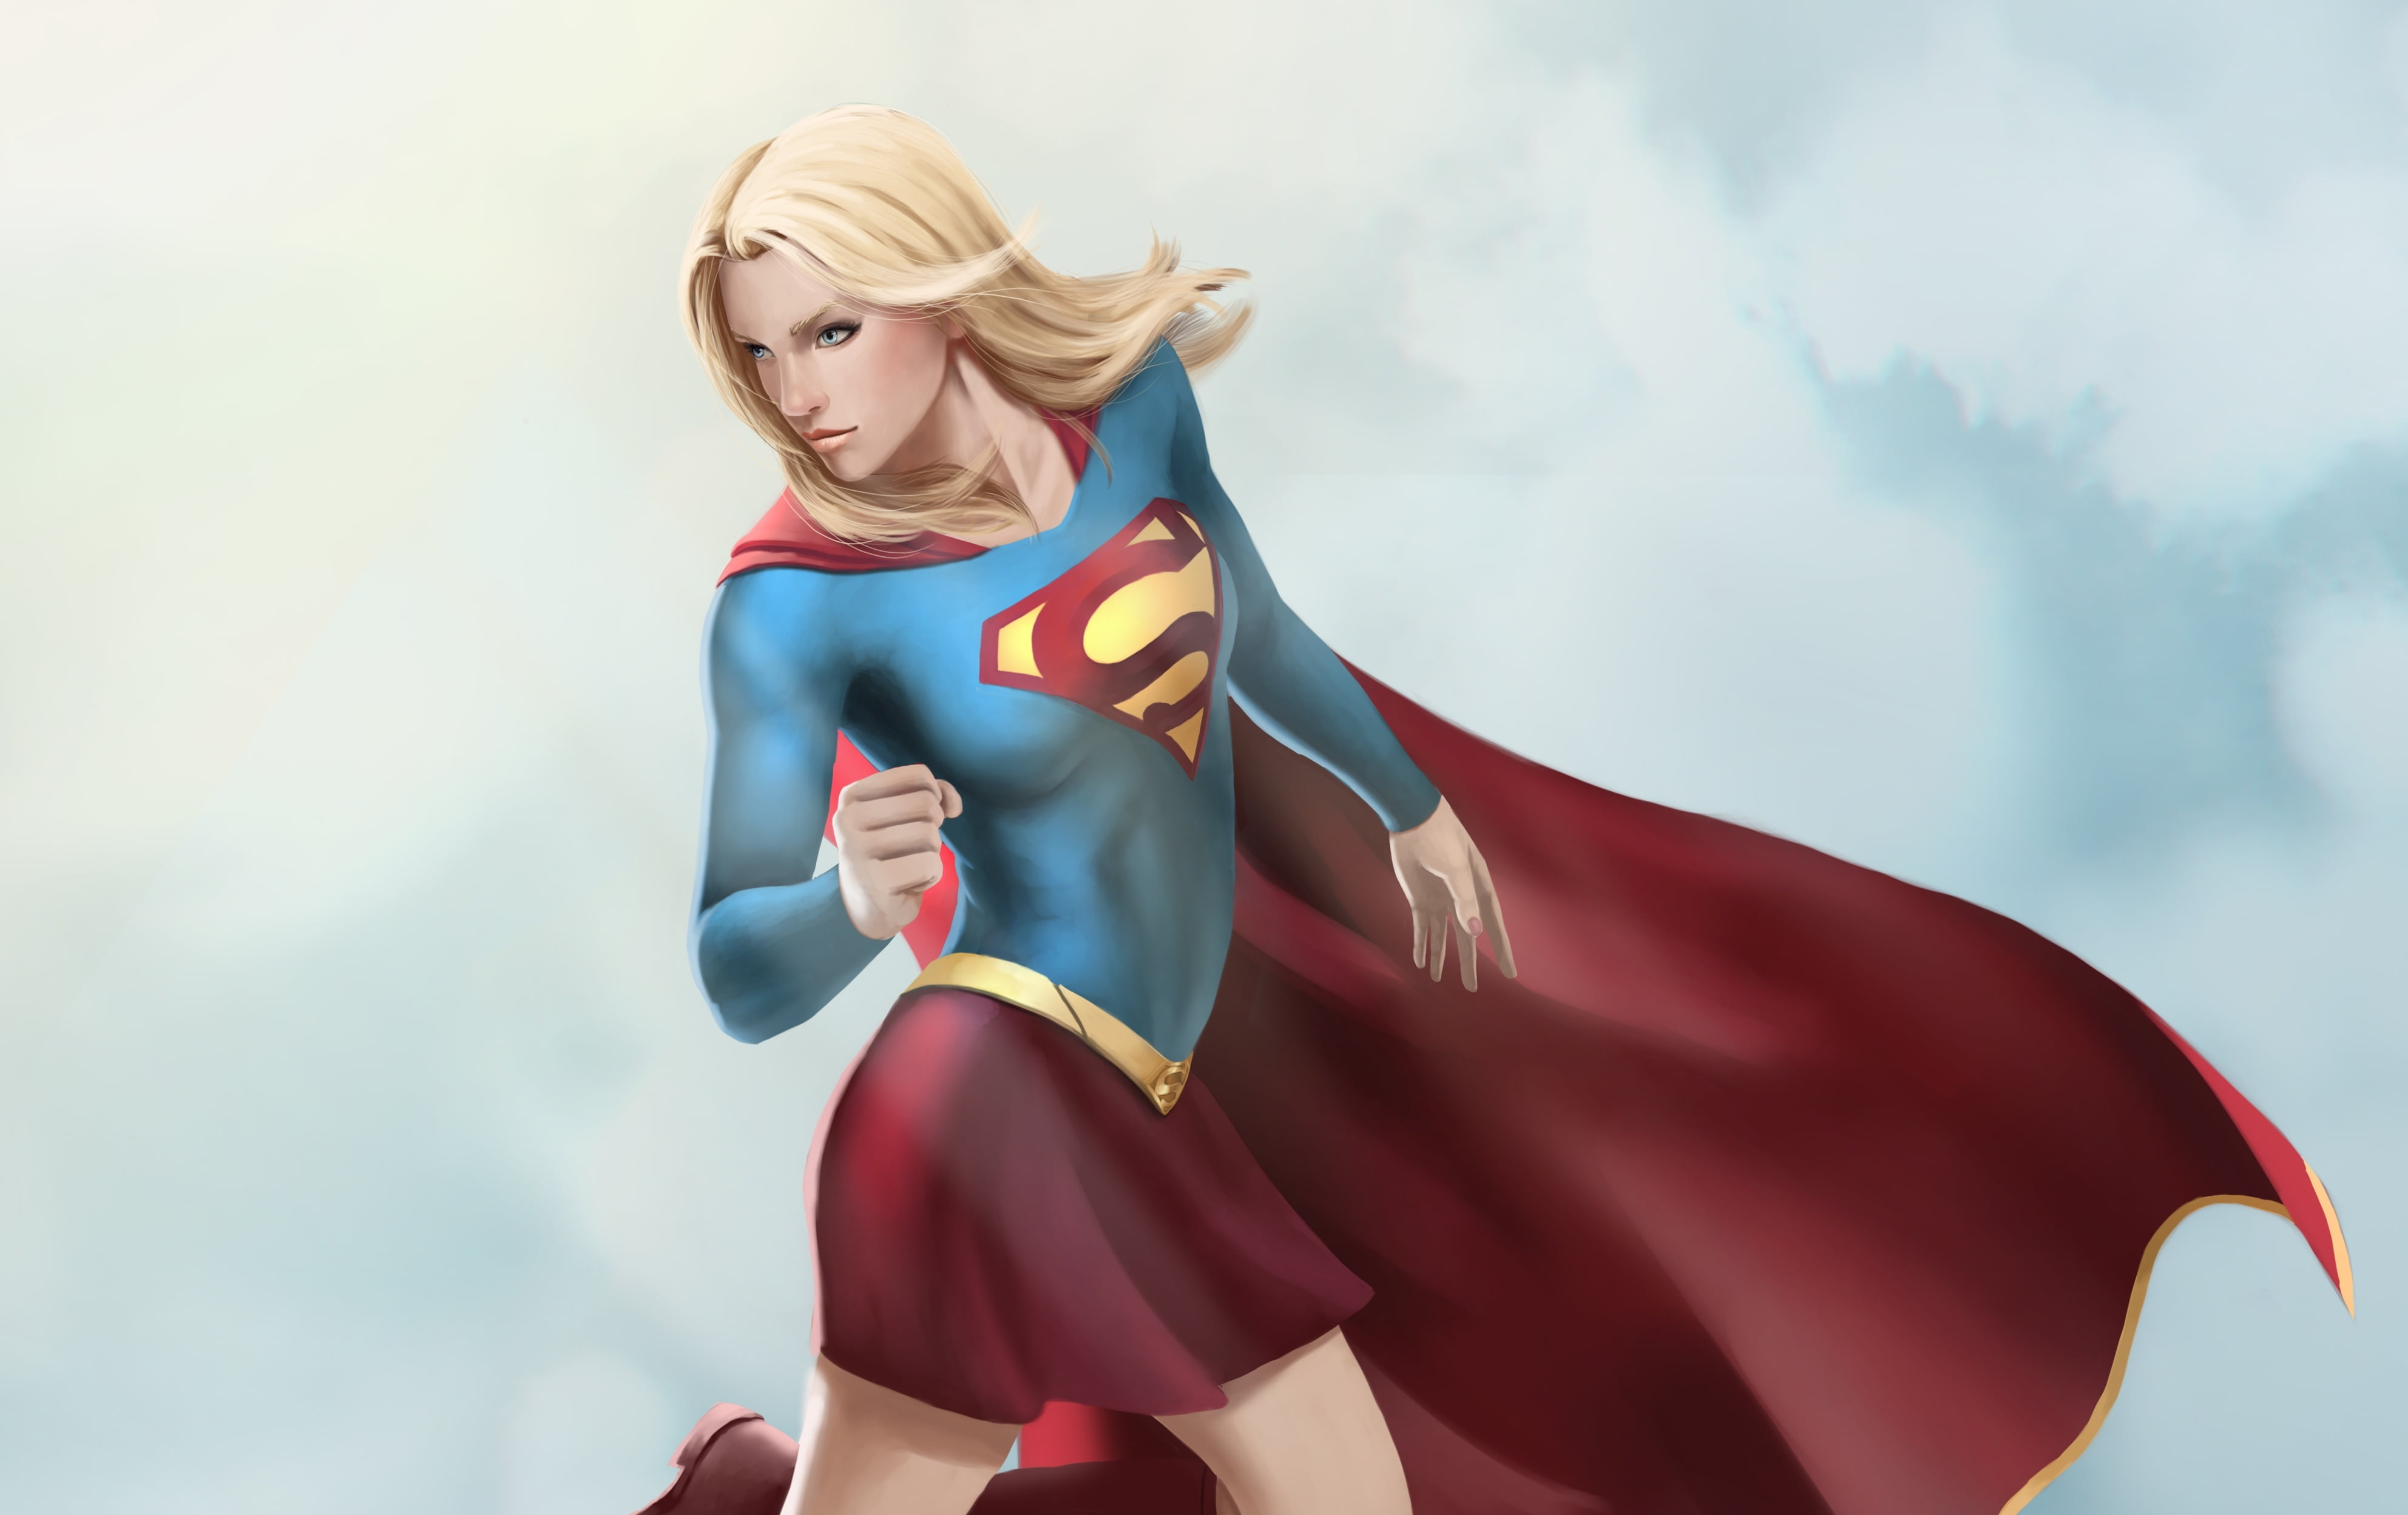 Supergirl digital wallpaper, fiction, art, superhero, dc comics